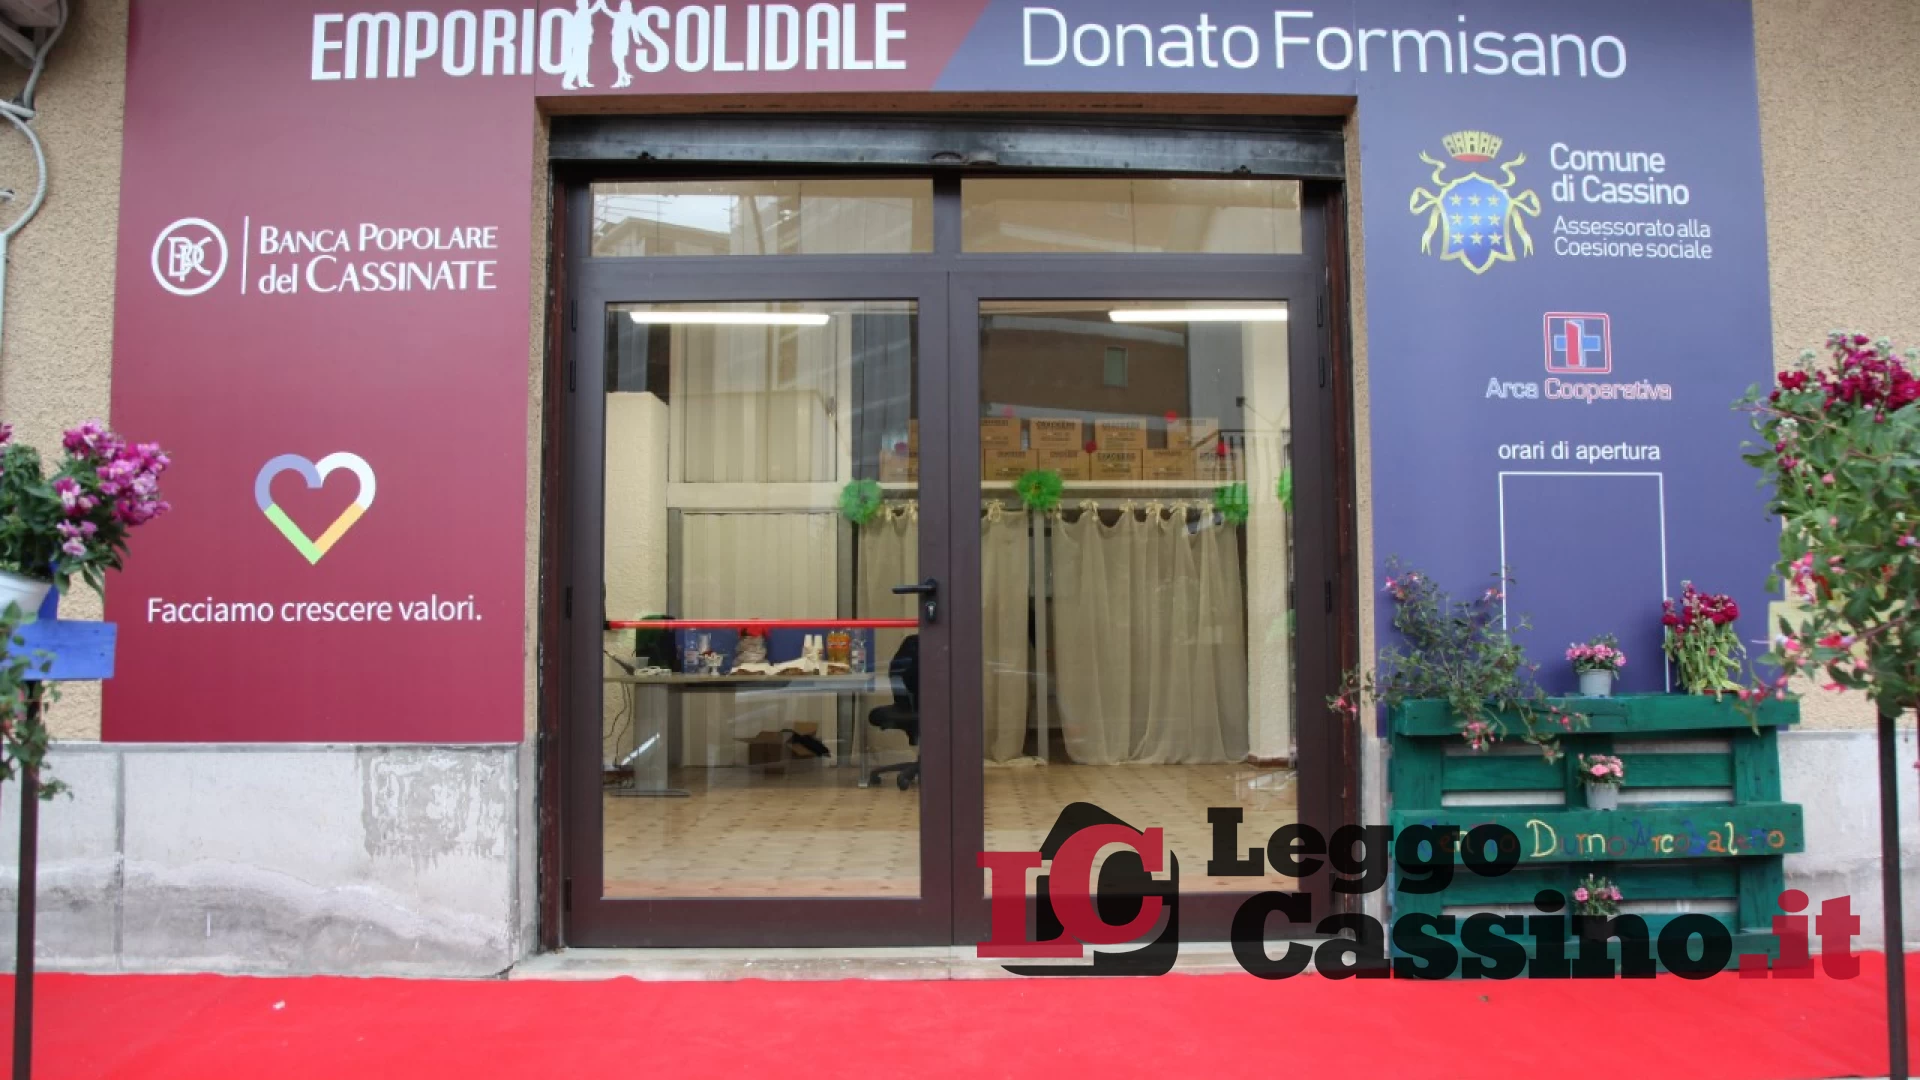 Inaugurato l'emporio solidale intitolato a Donato Formisano